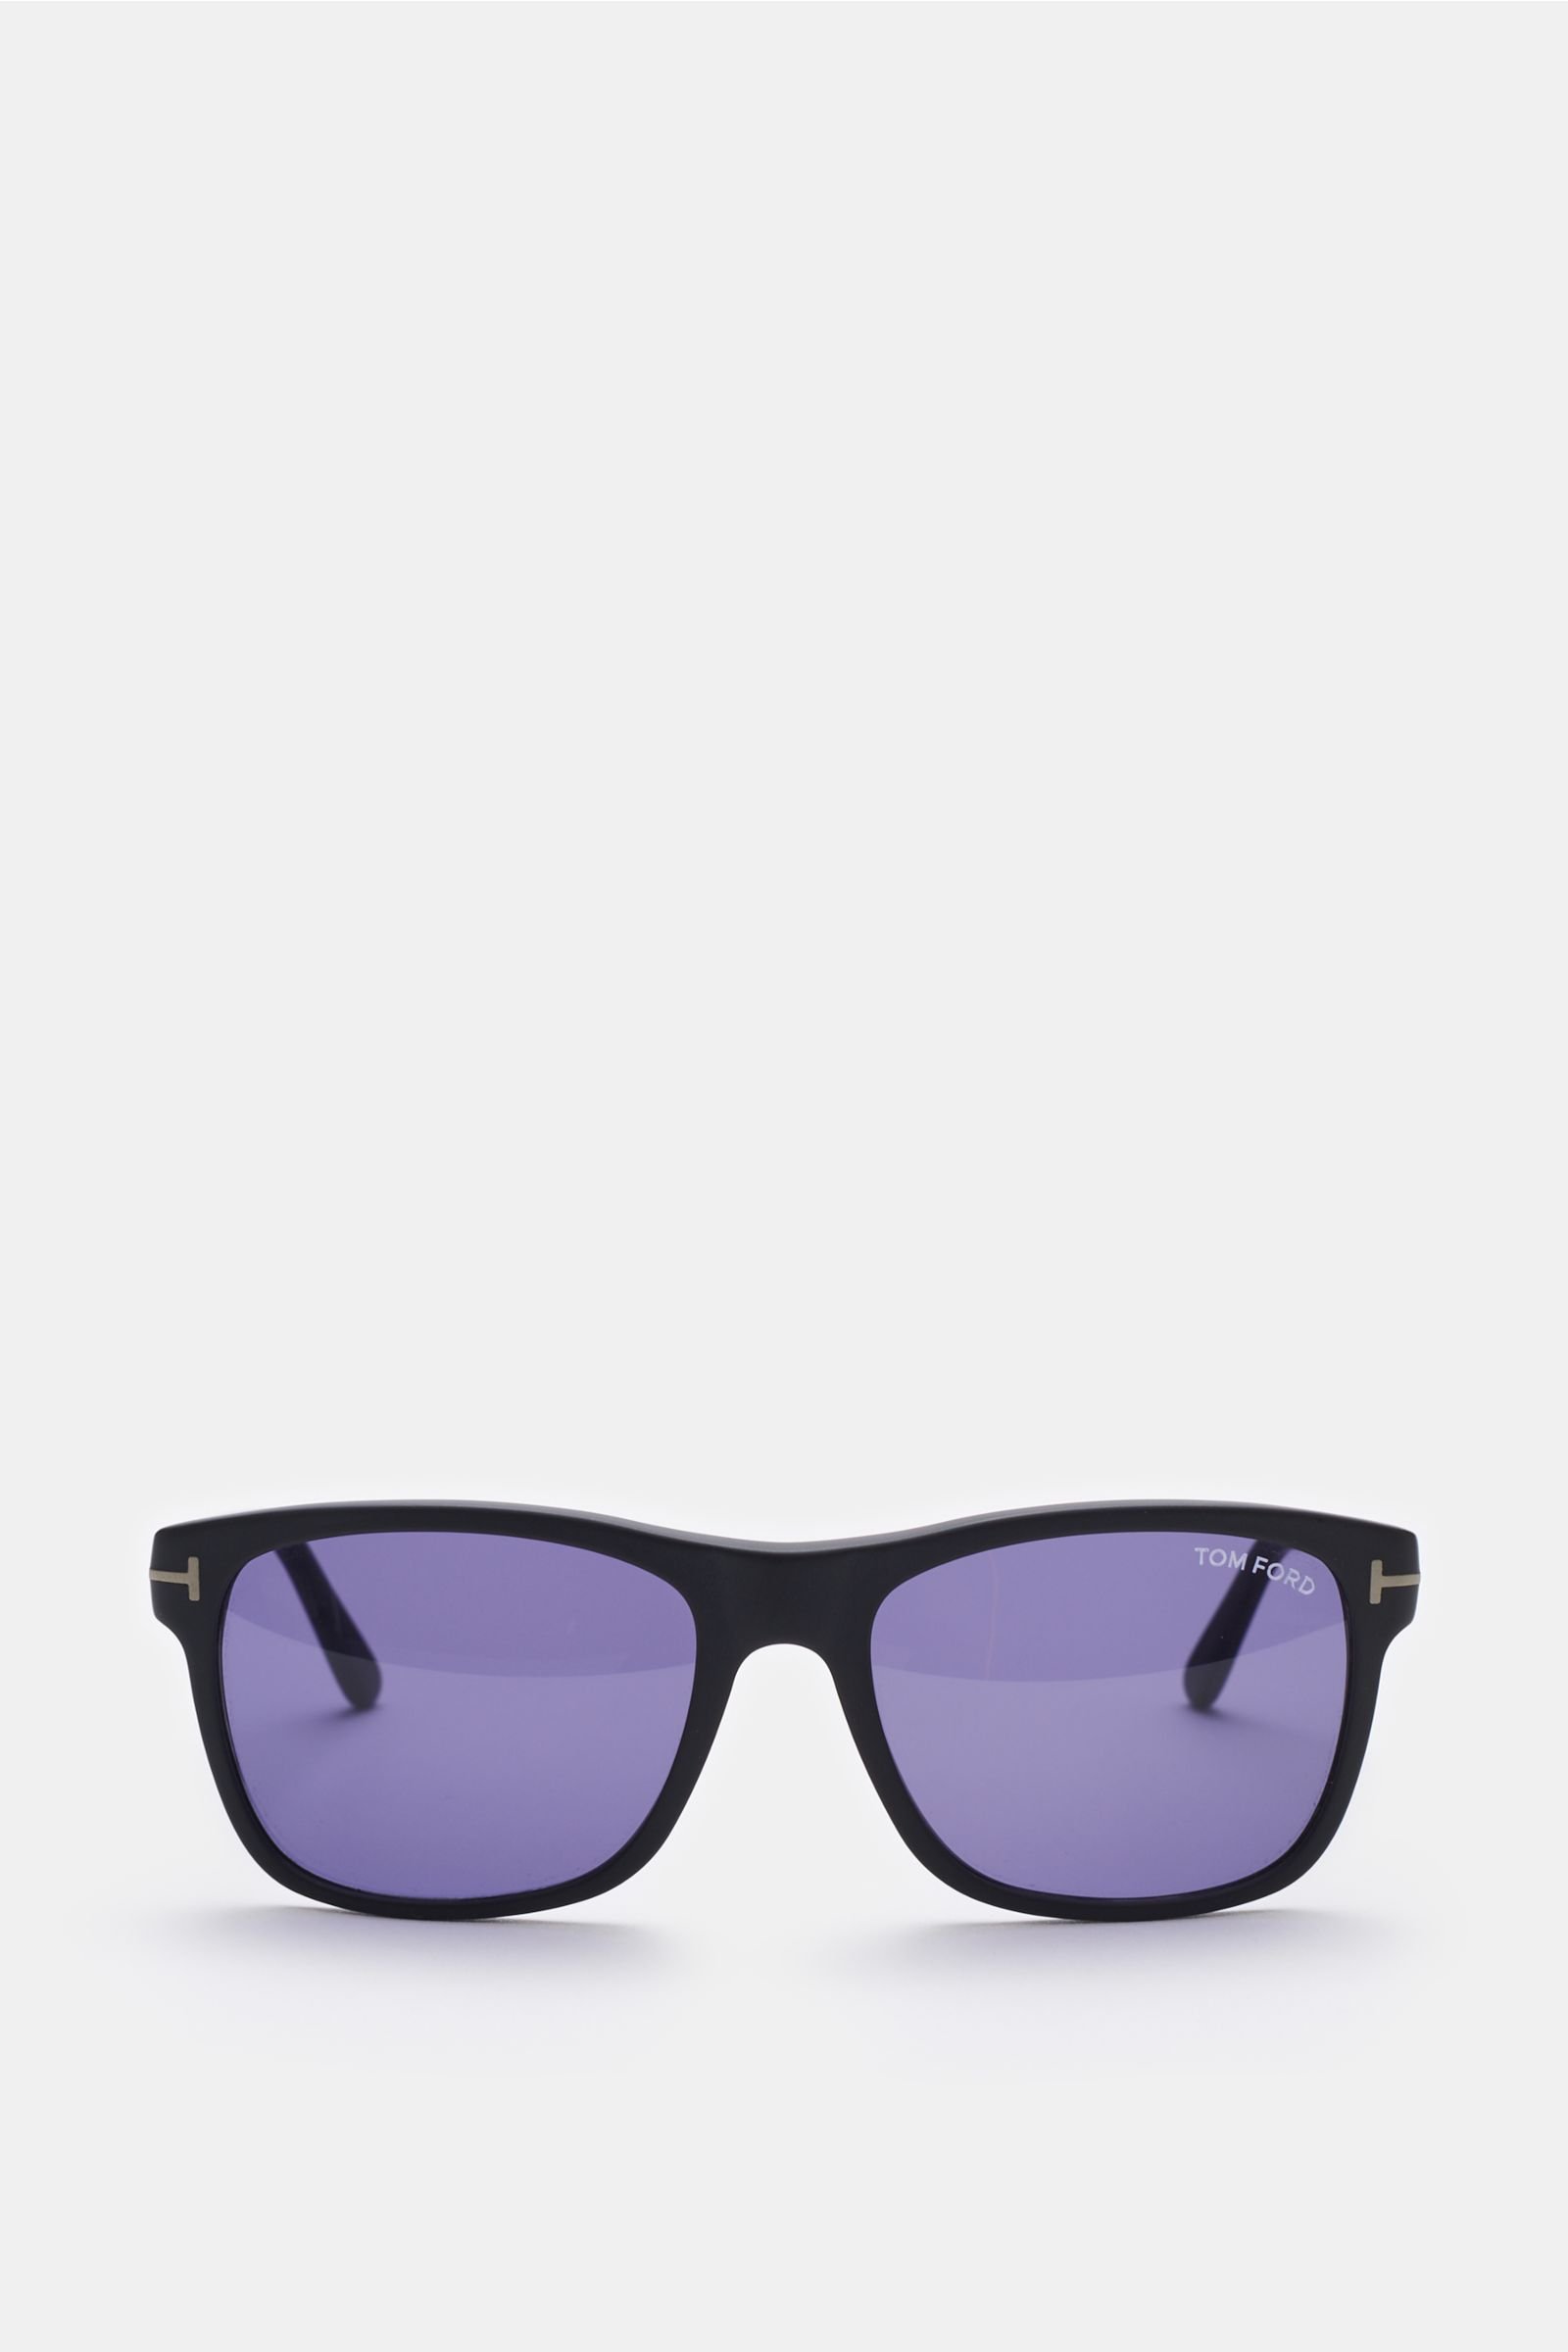 Sonnenbrille 'Giulio' grau/blau